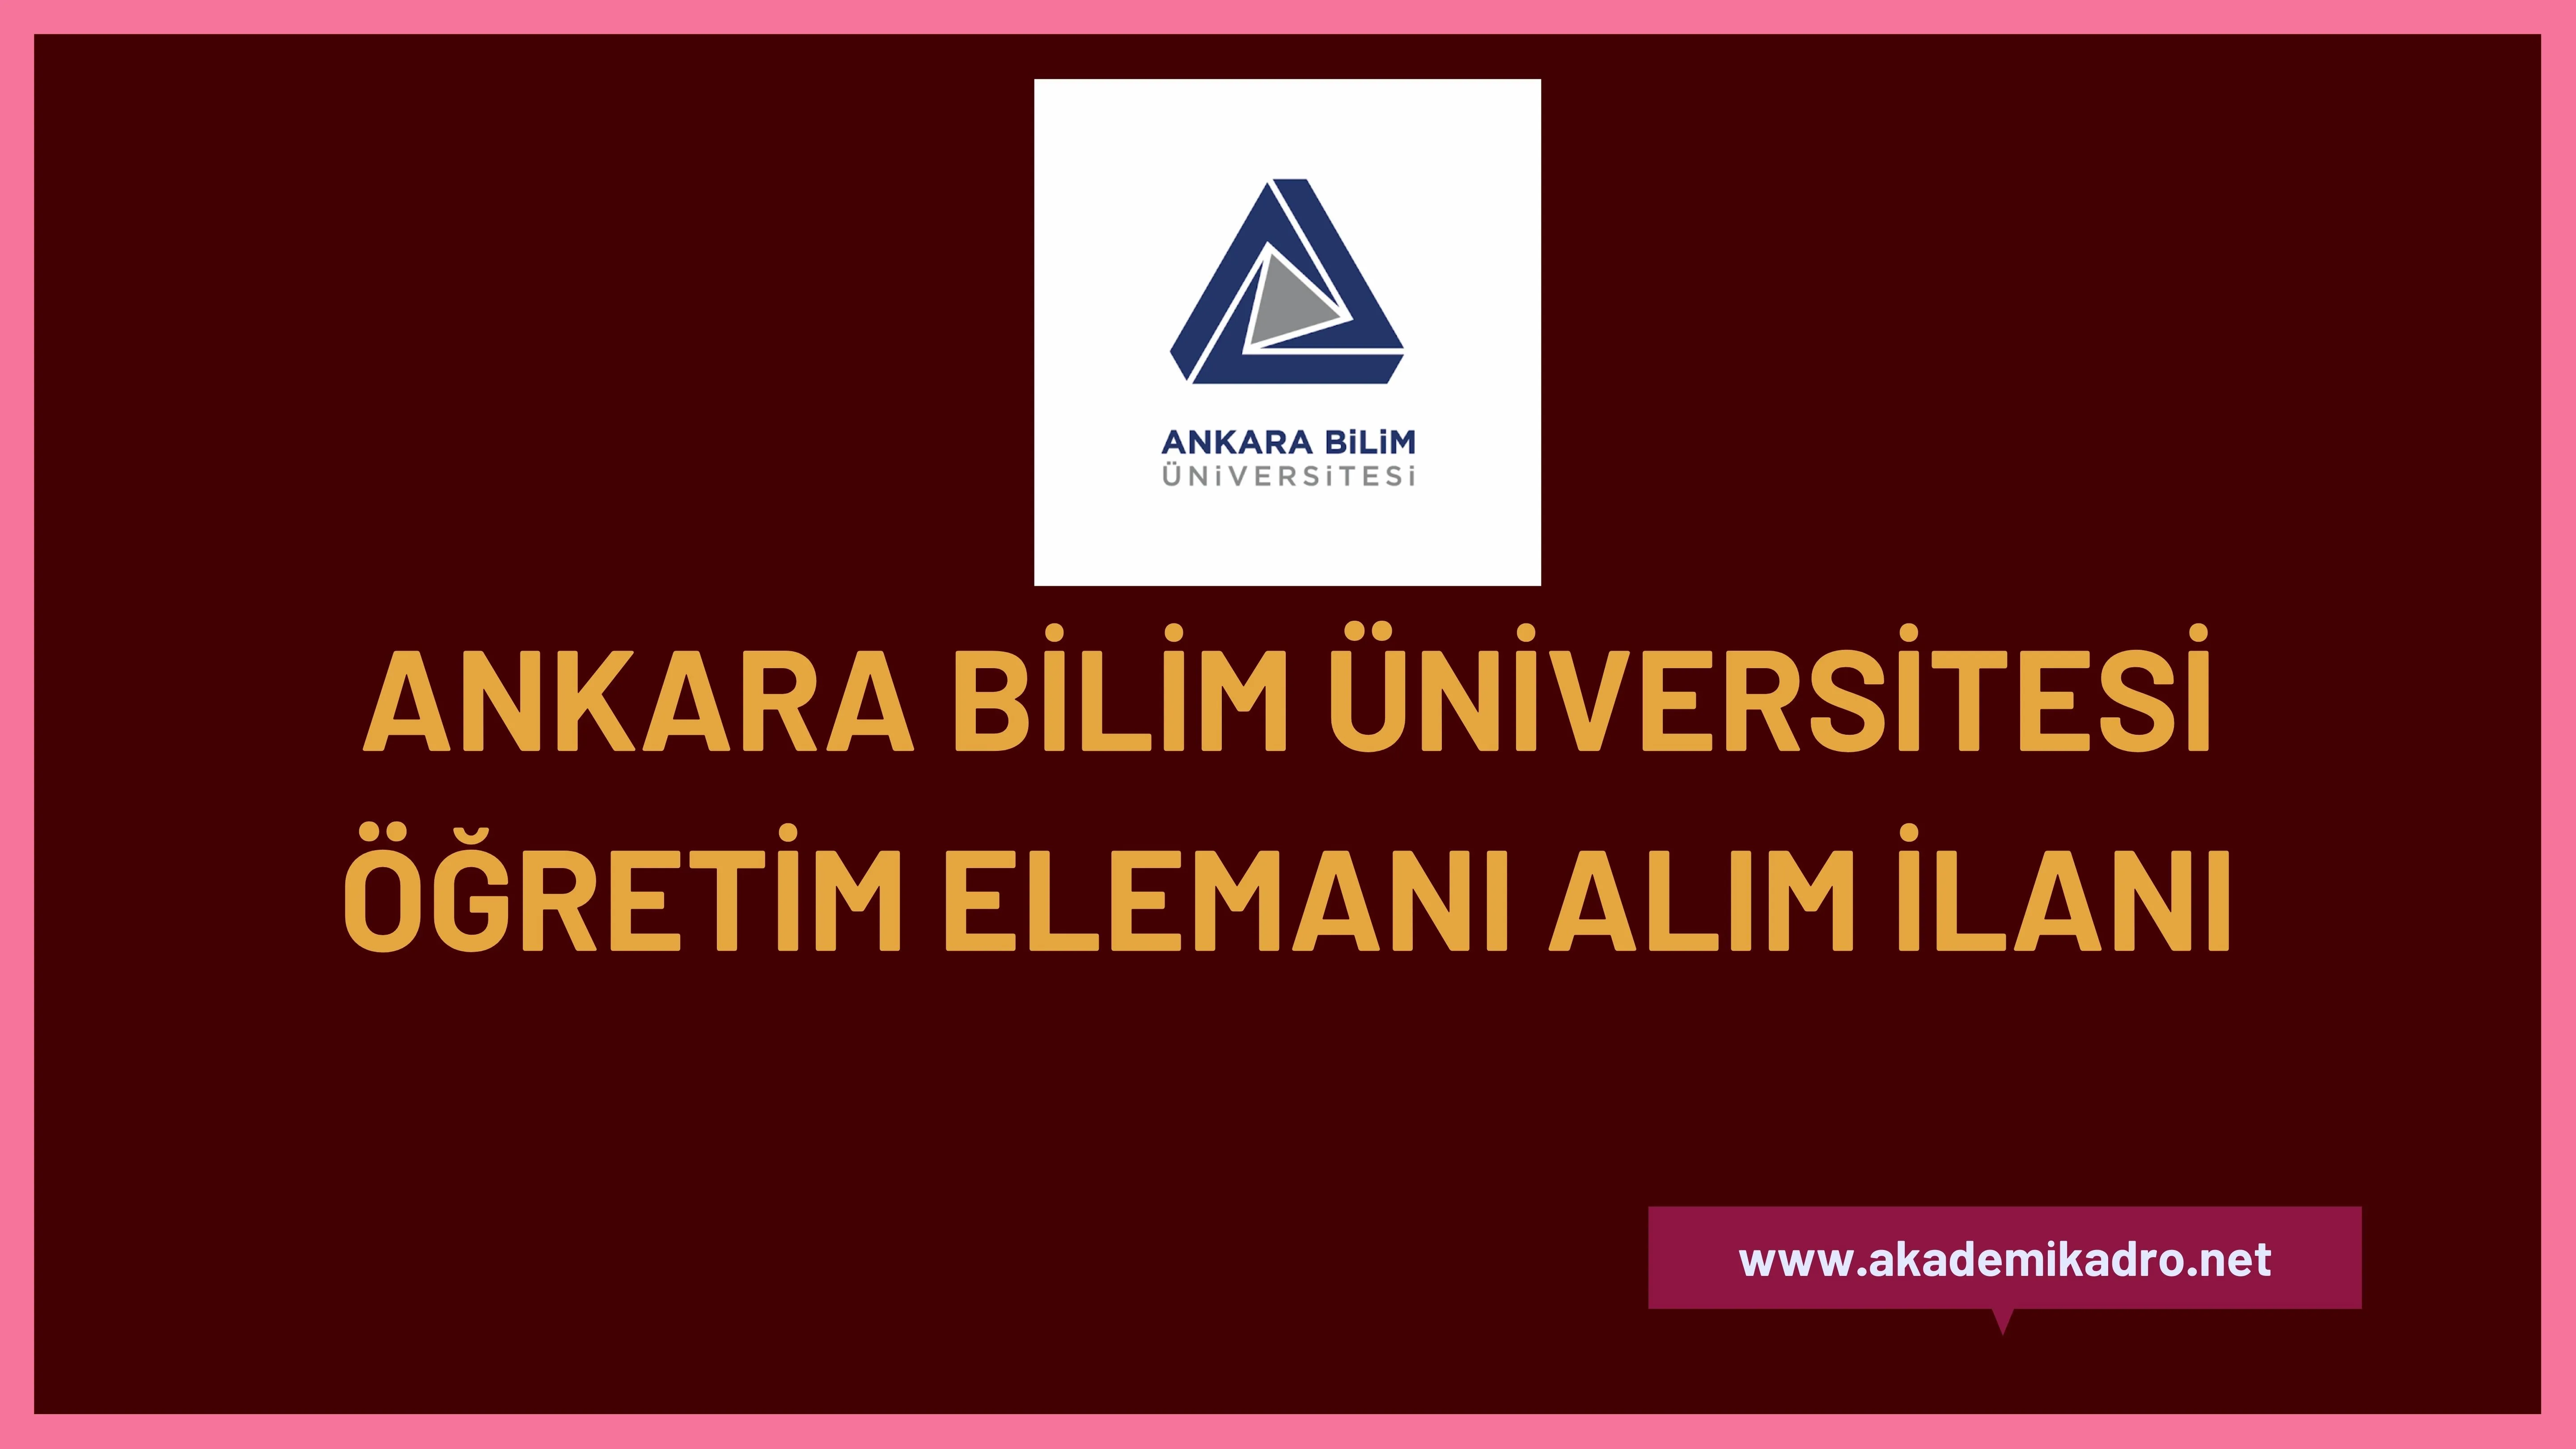 Ankara Bilim Üniversitesi 4 Araştırma görevlisi, 10 Öğretim görevlisi ve 6 öğretim üyesi olmak üzere 20 Öğretim elemanı alacak.